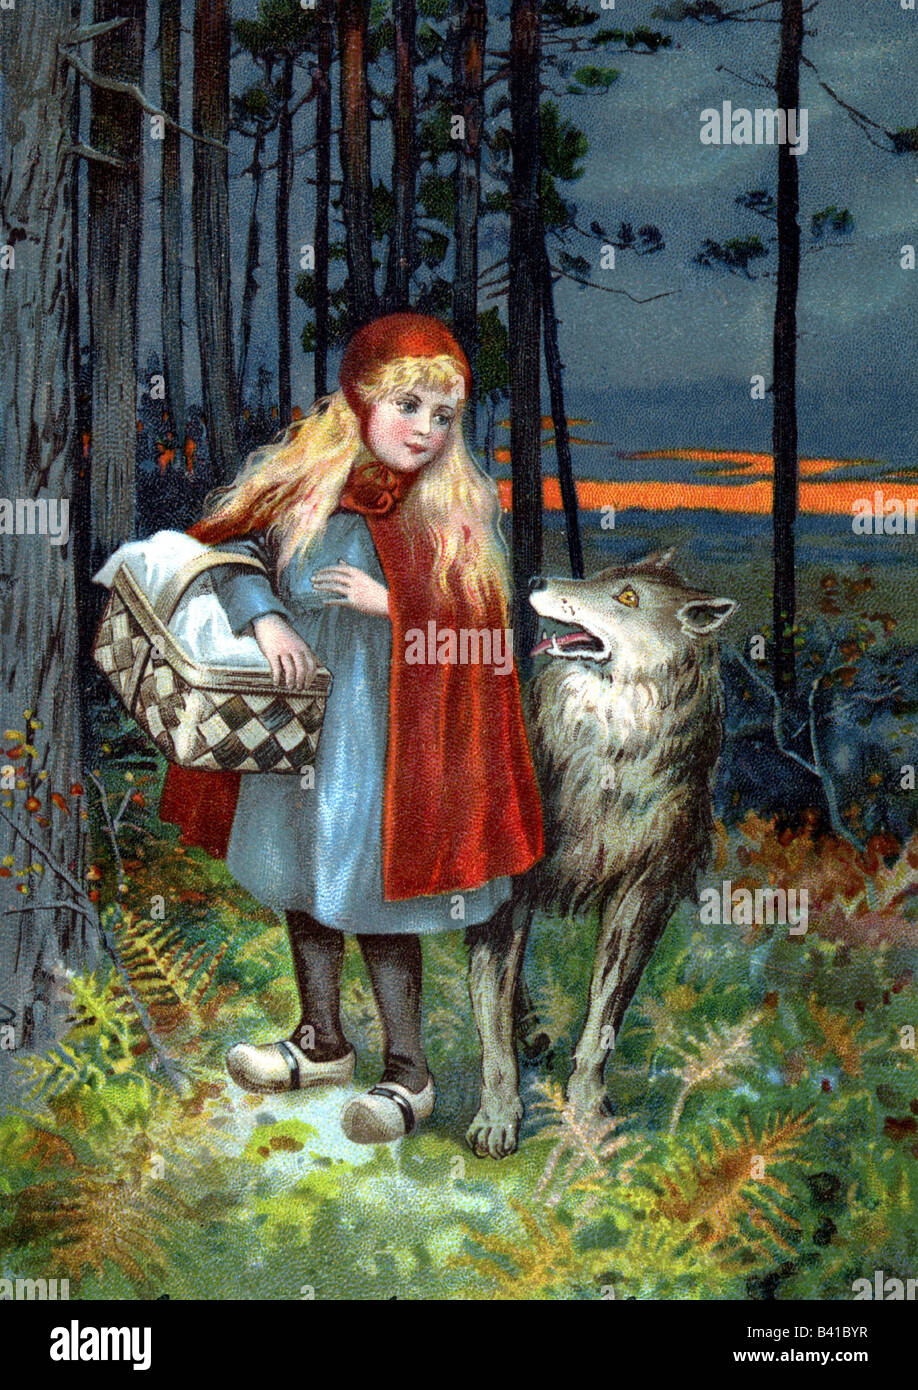 Literatur, Geschichte von 'Kleiner Rotkäppchen', von Gebrüdern Grimm, Kleiner Rotkäppchen und Wolf im Wald, ca. 1910, 20. Jahrhundert, Folktale, Stockfoto